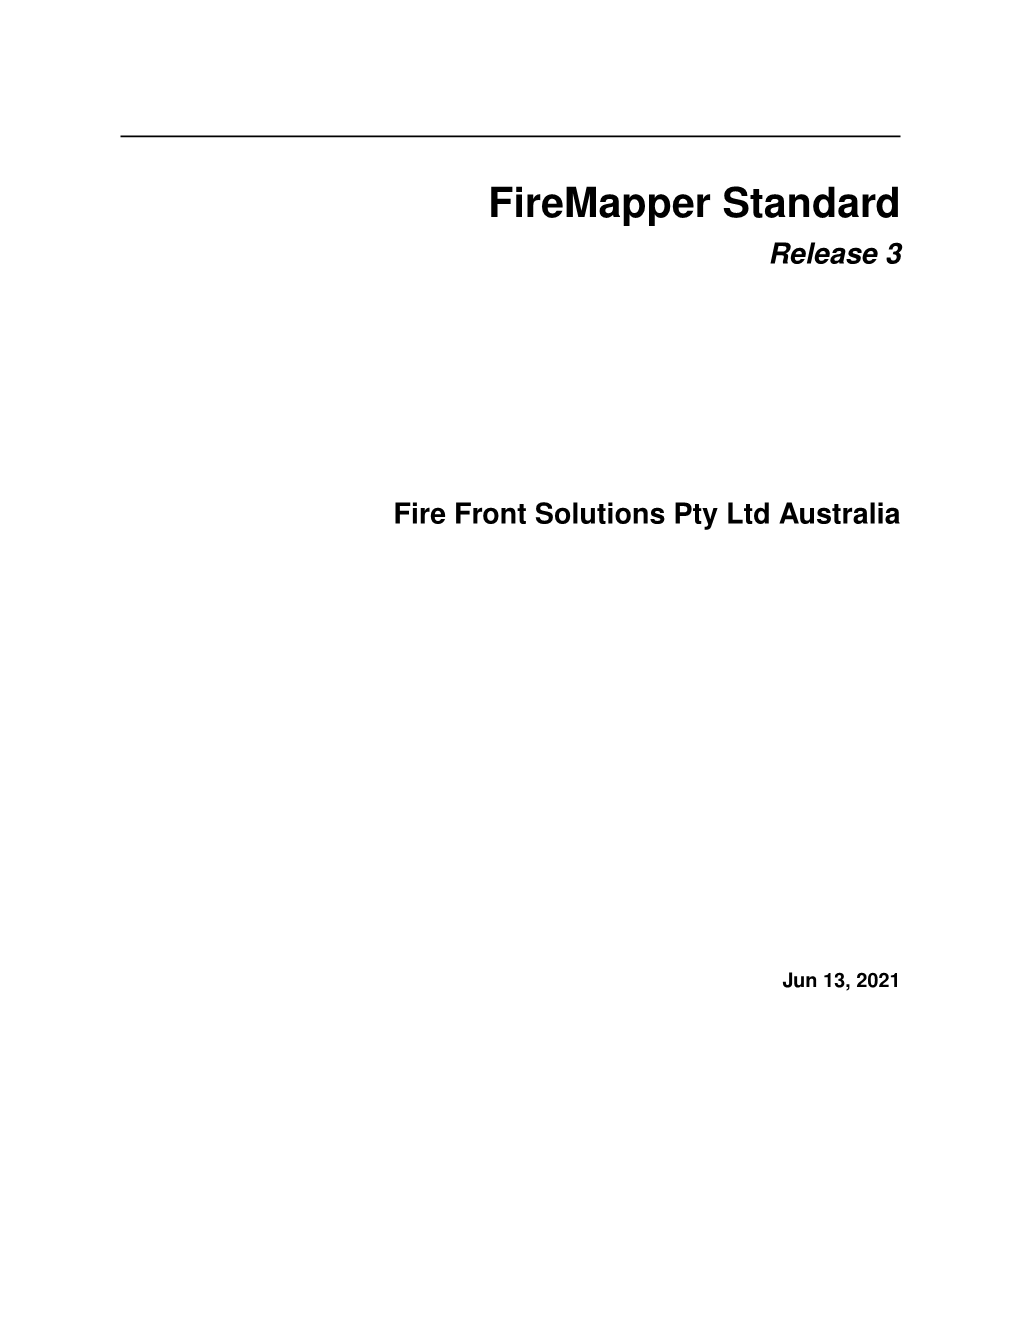 Firemapper Standard Release 3